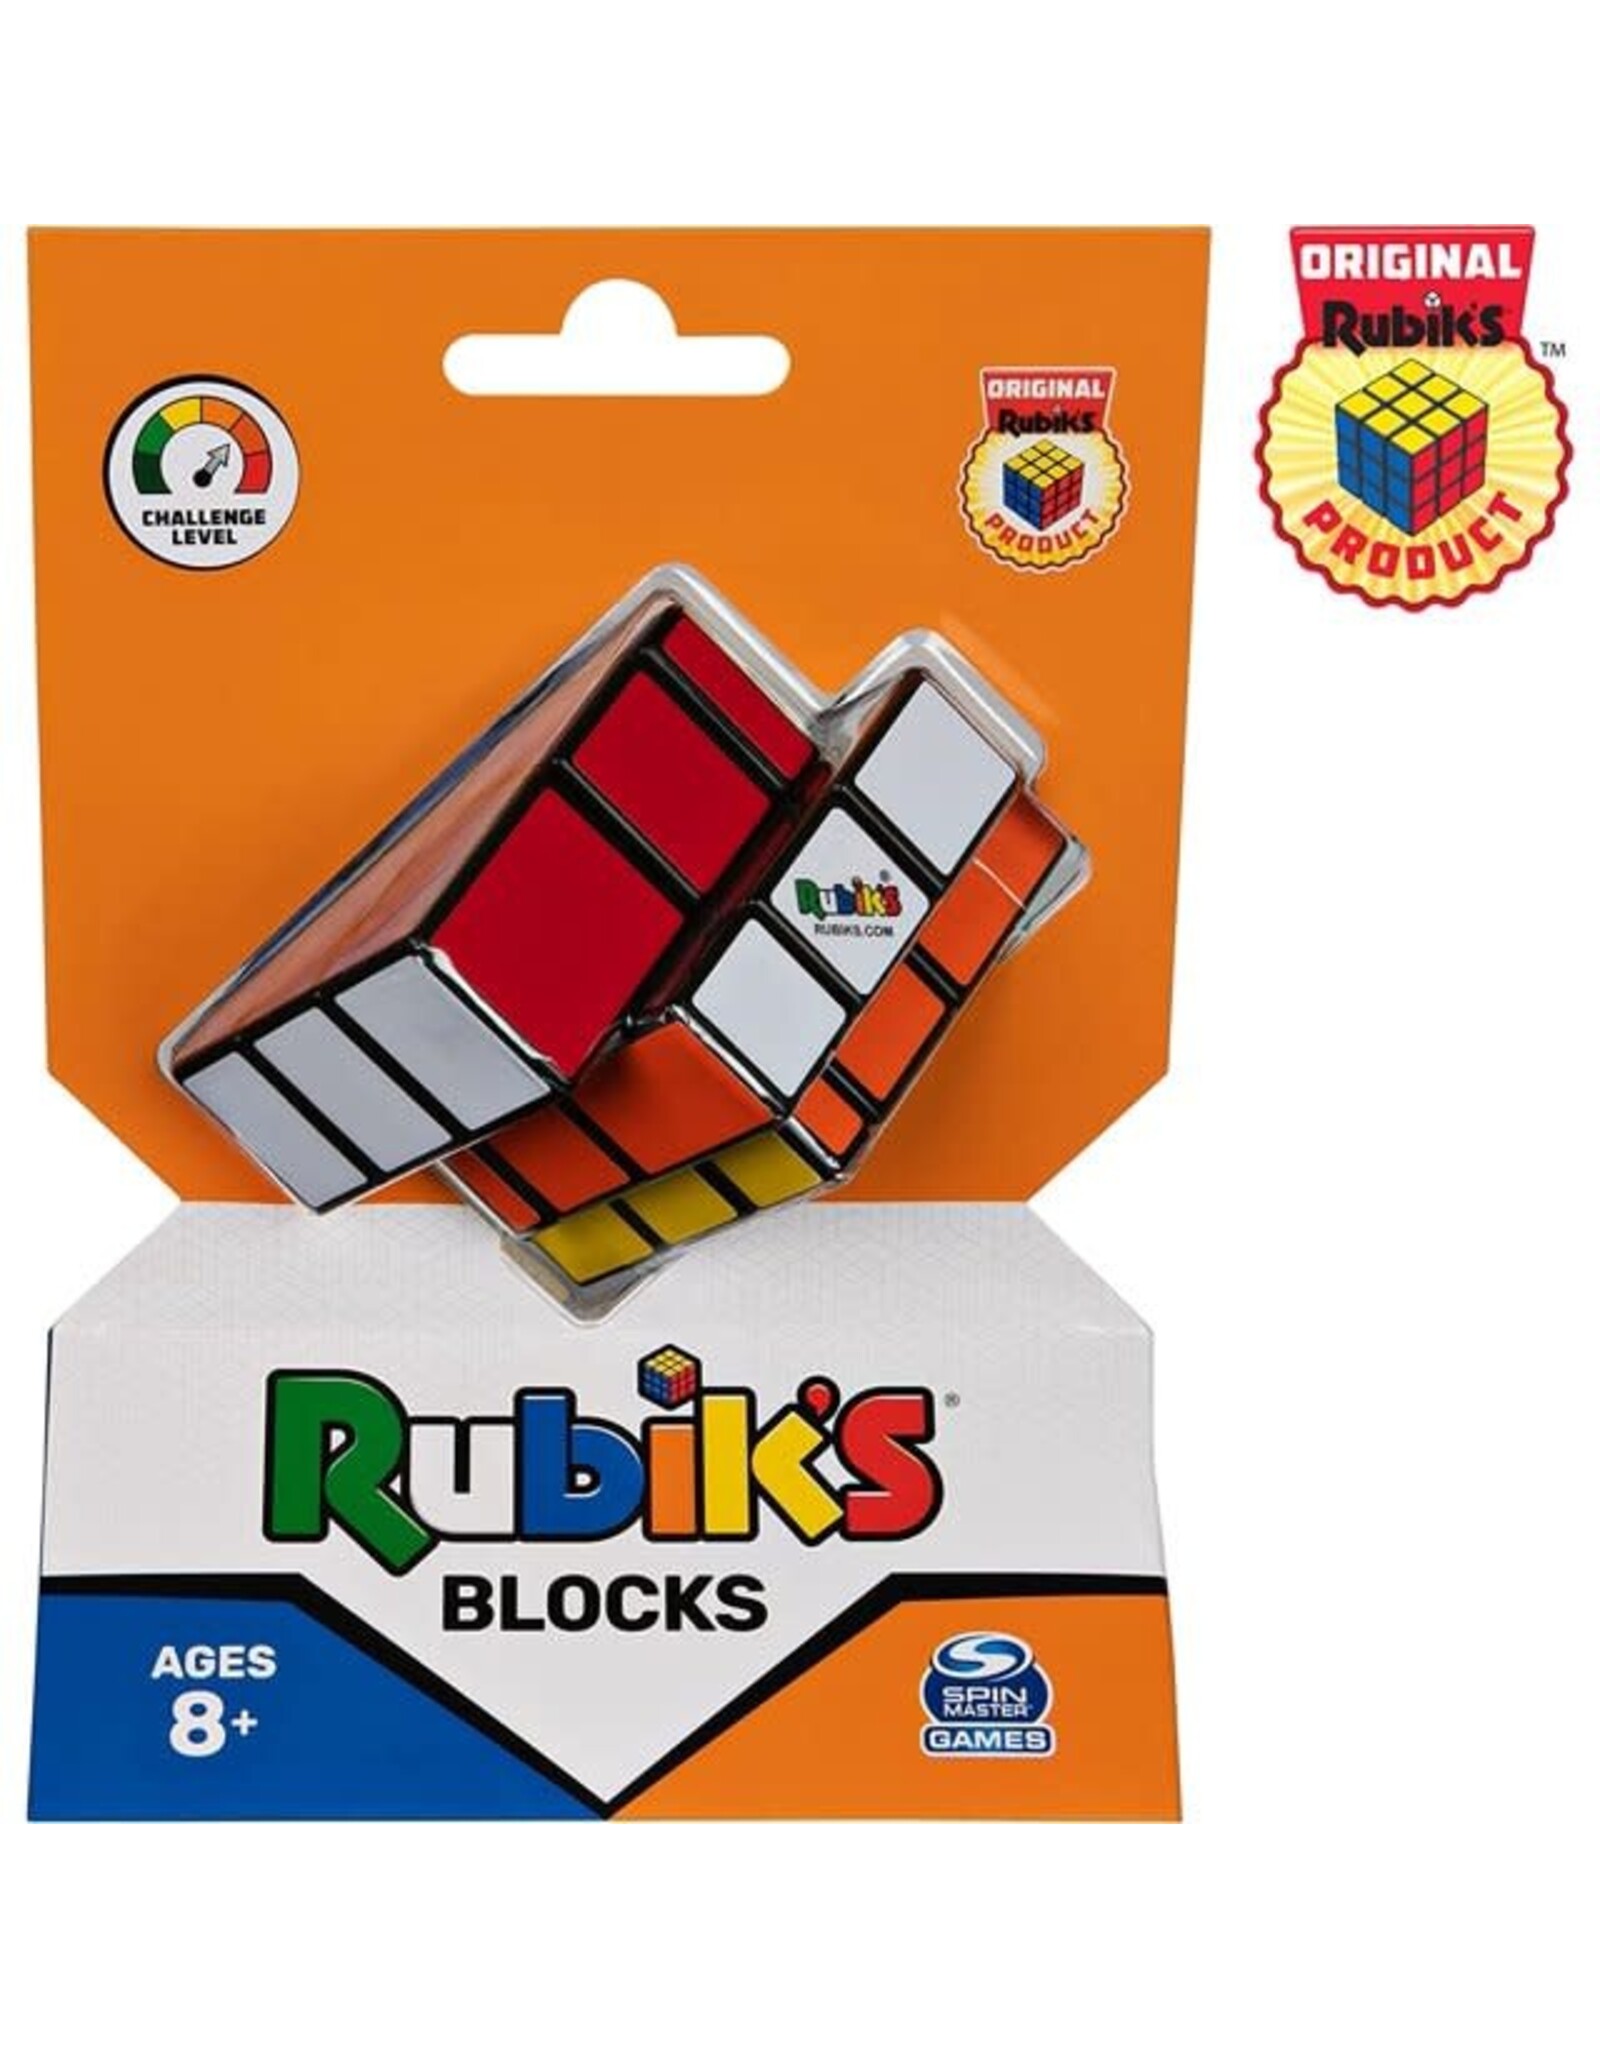 Rubiks 3x3 Color Block